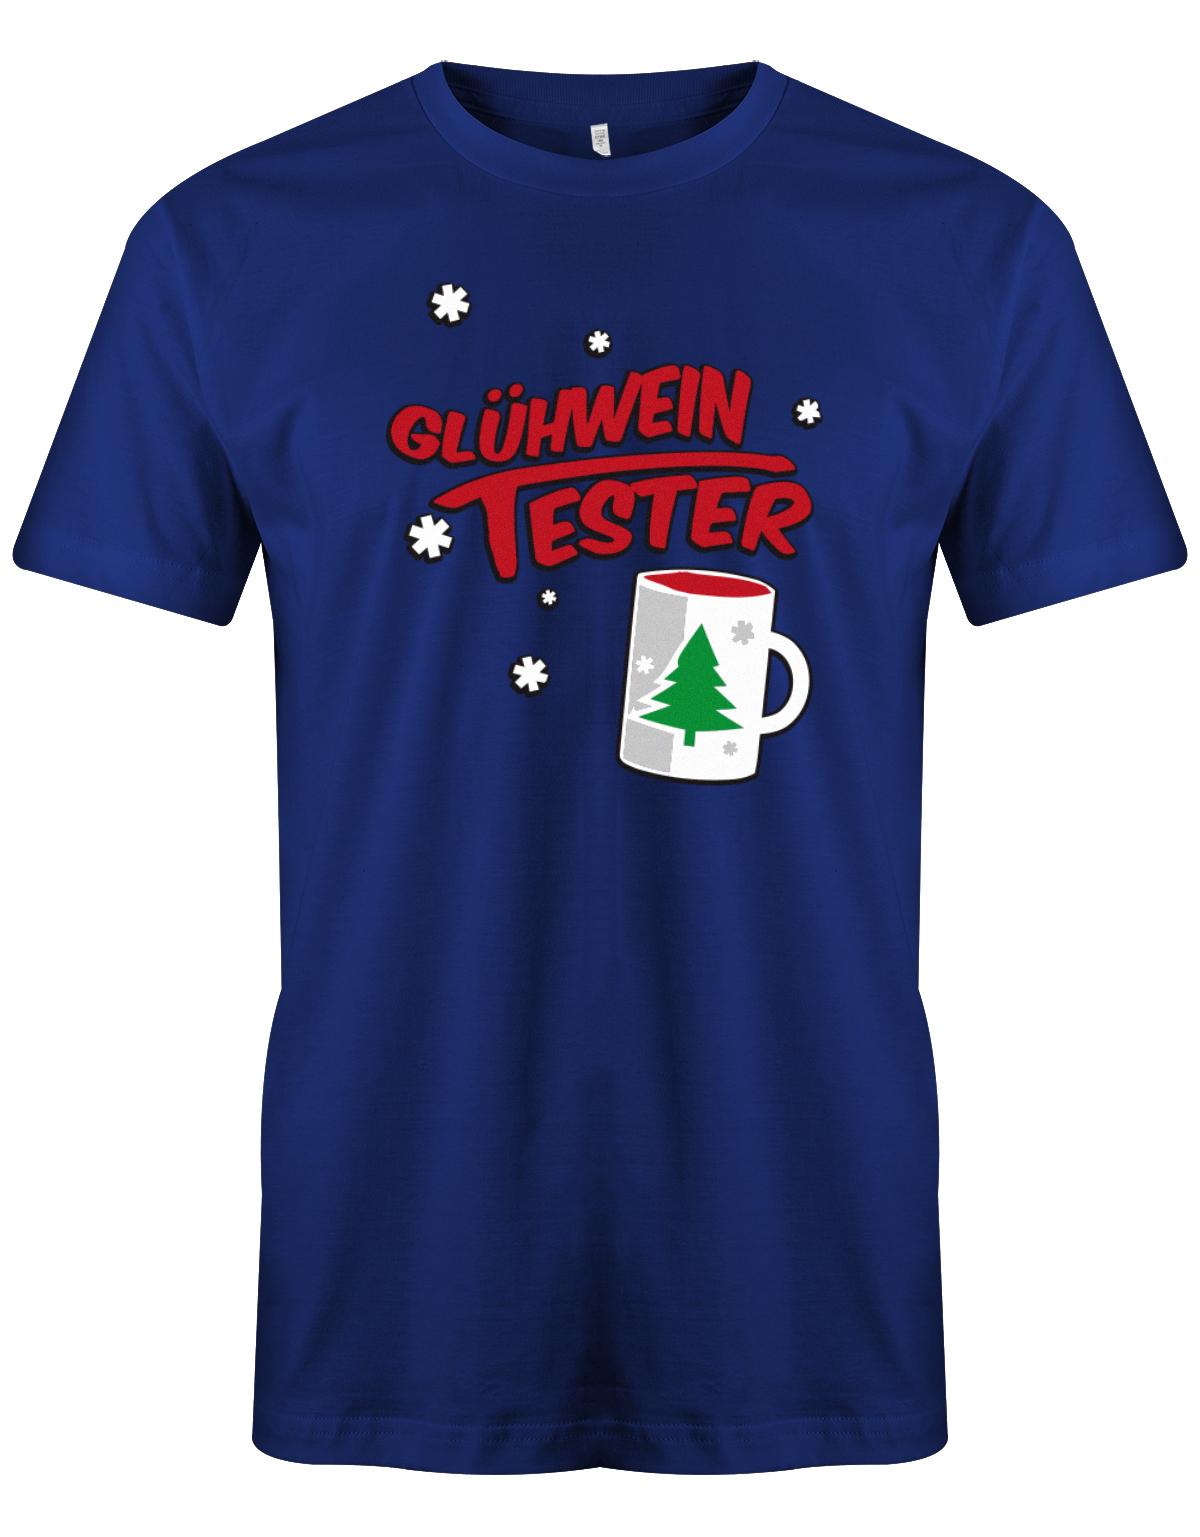 Gl-hwein-tester-Weihnachten-Shirt-Herren-Royalblau